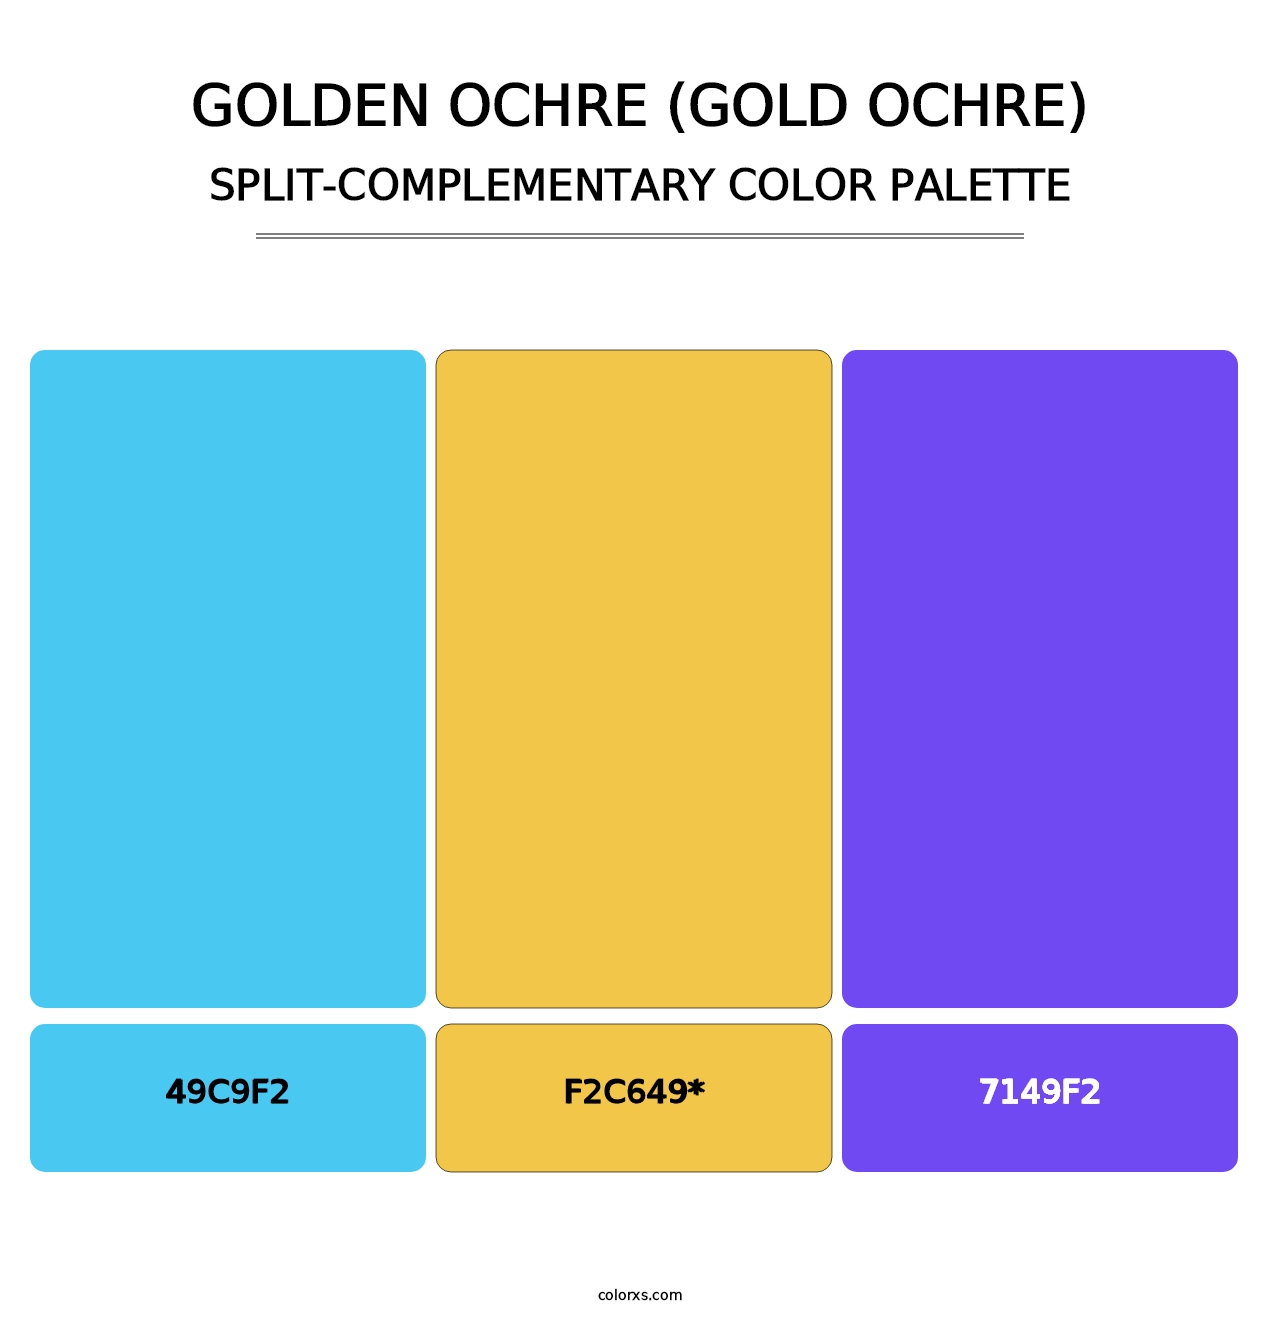 Golden Ochre (Gold Ochre) - Split-Complementary Color Palette